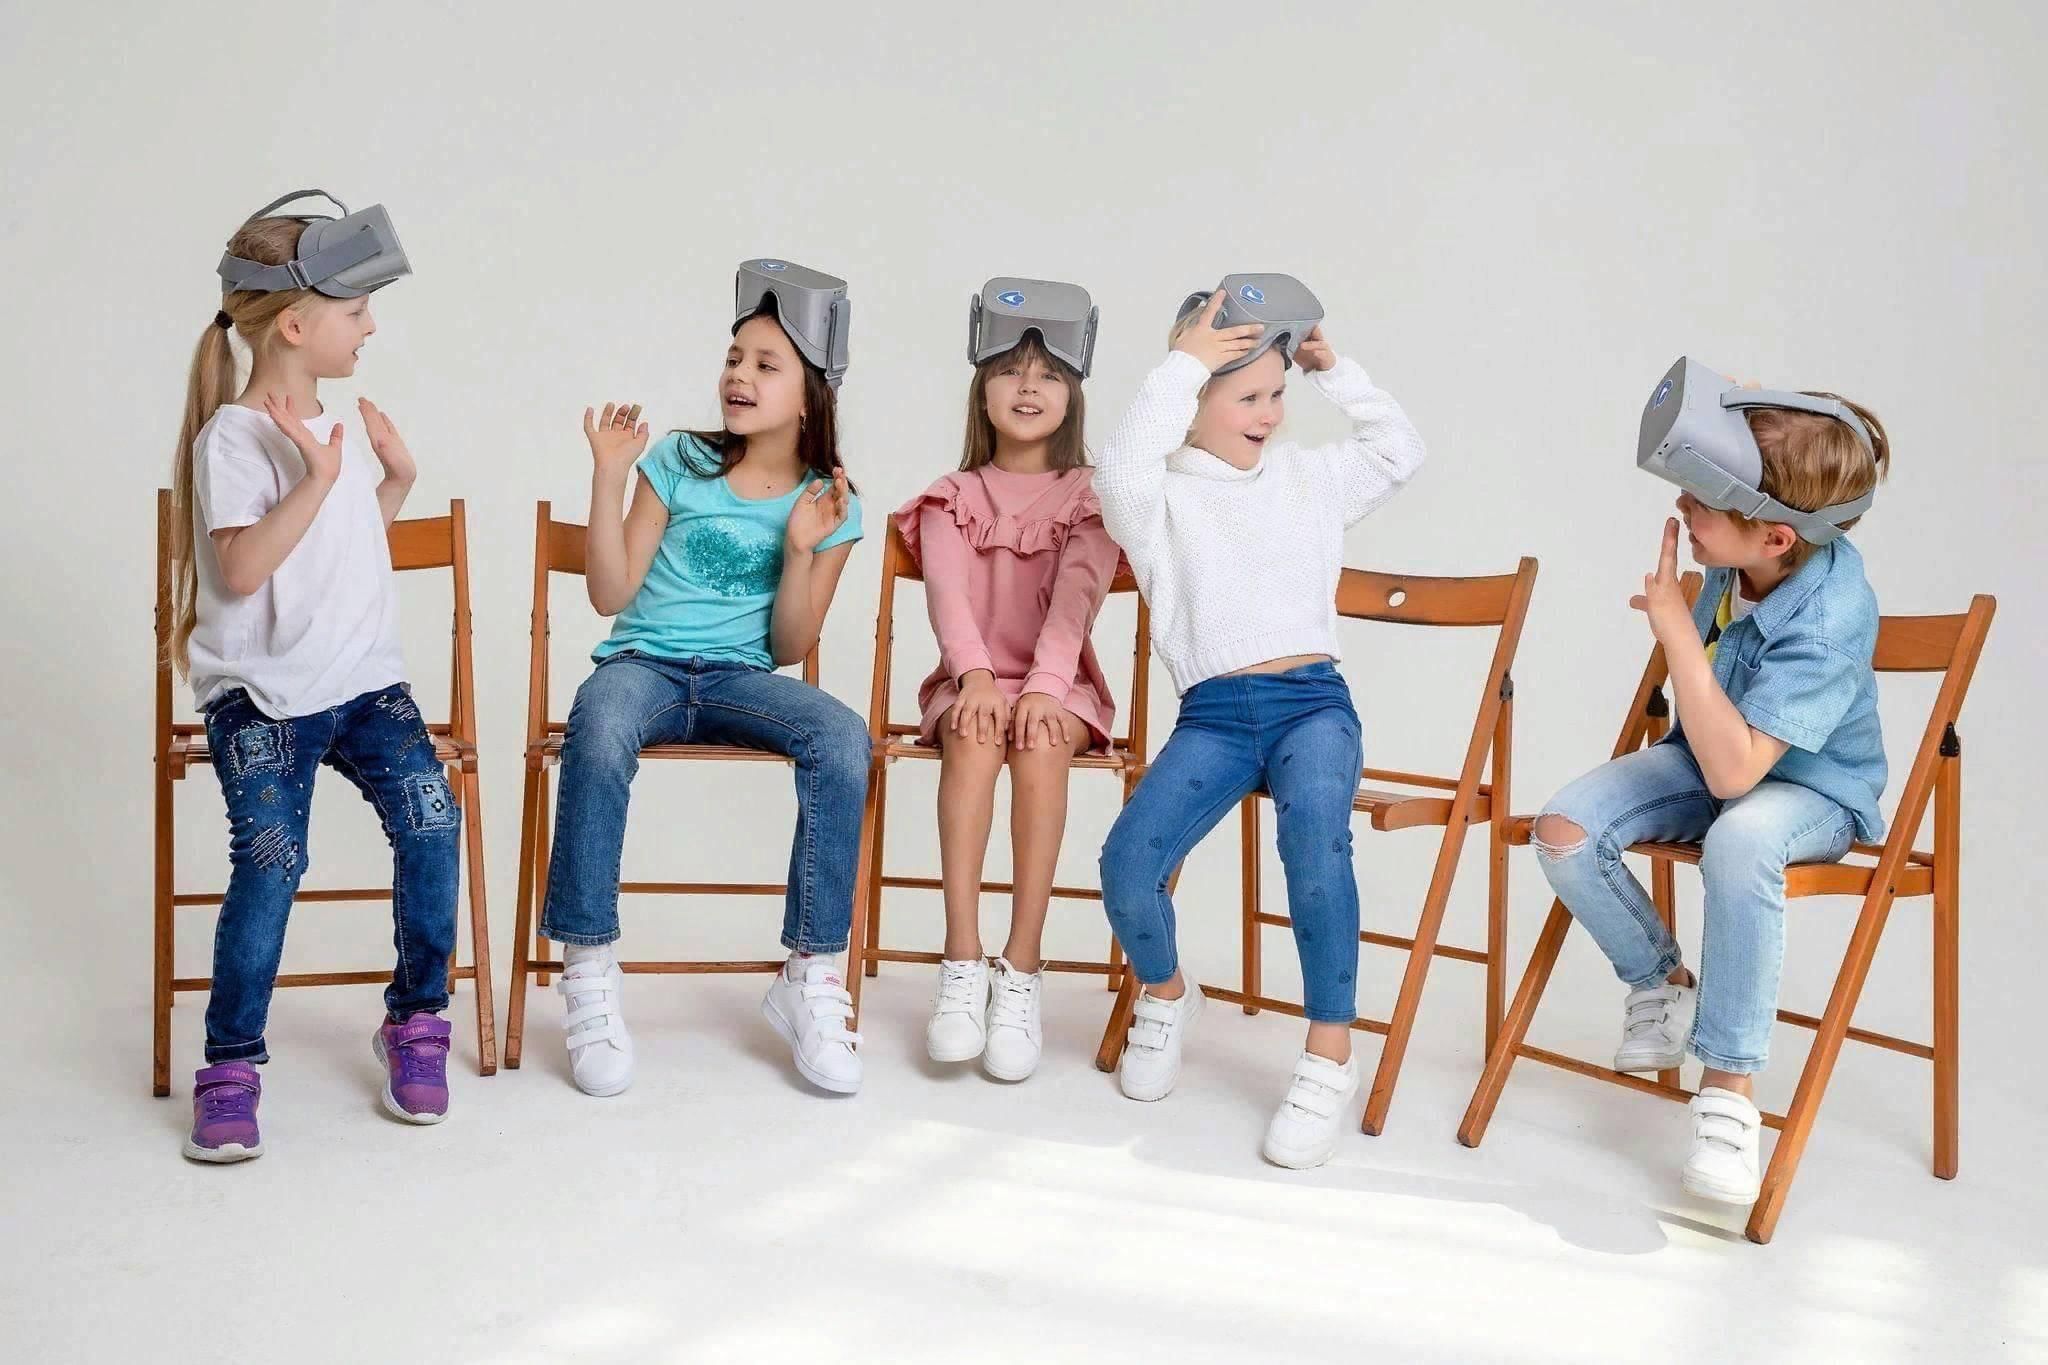 Альтаирика. VR экскурсии. Миасс 2022 набор в школу моделей для подростков.